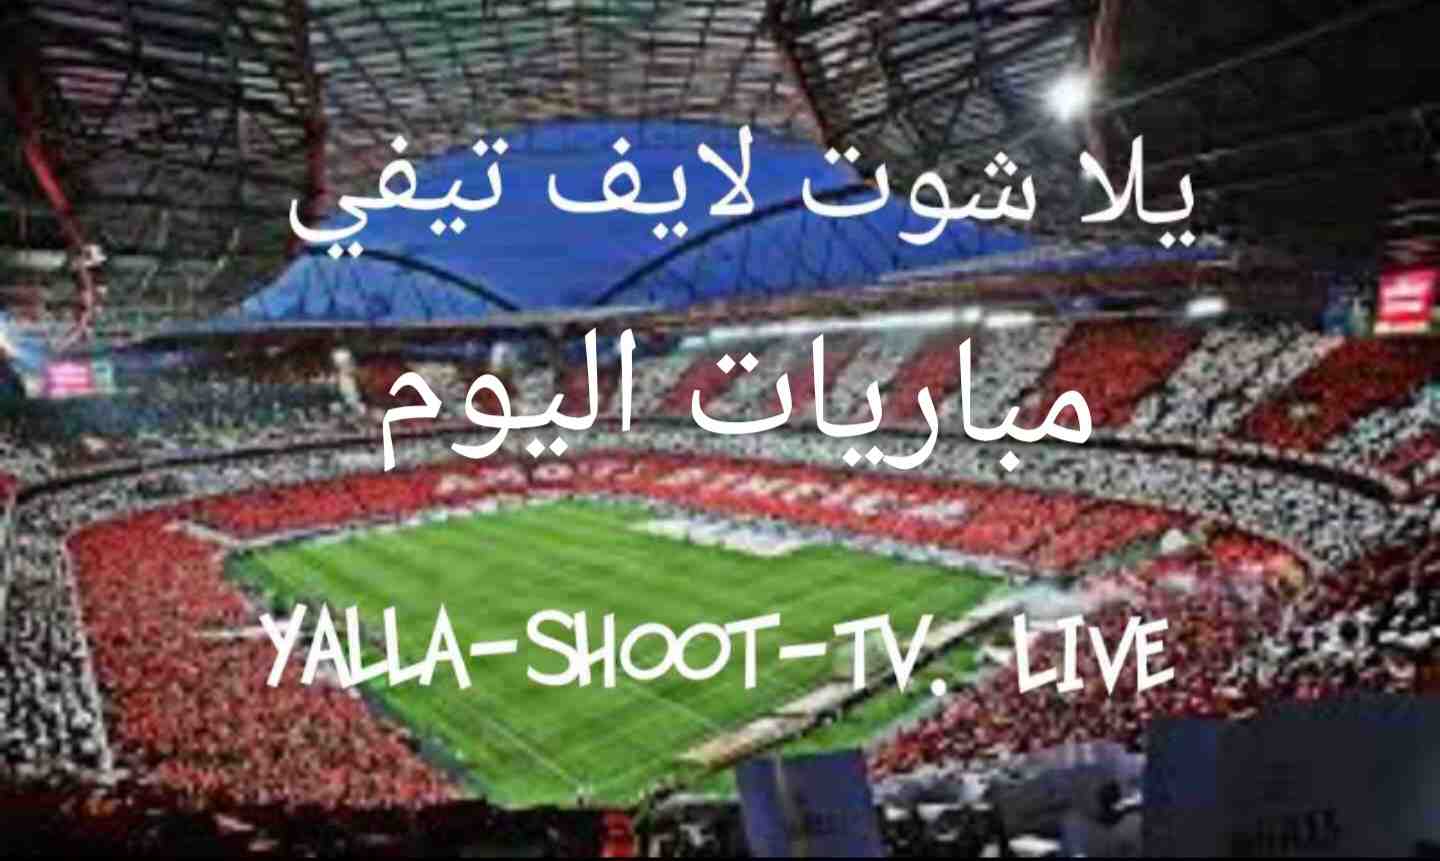 مشاهدة مباريات اليوم بث مباشر يلا شوت لايف matches today